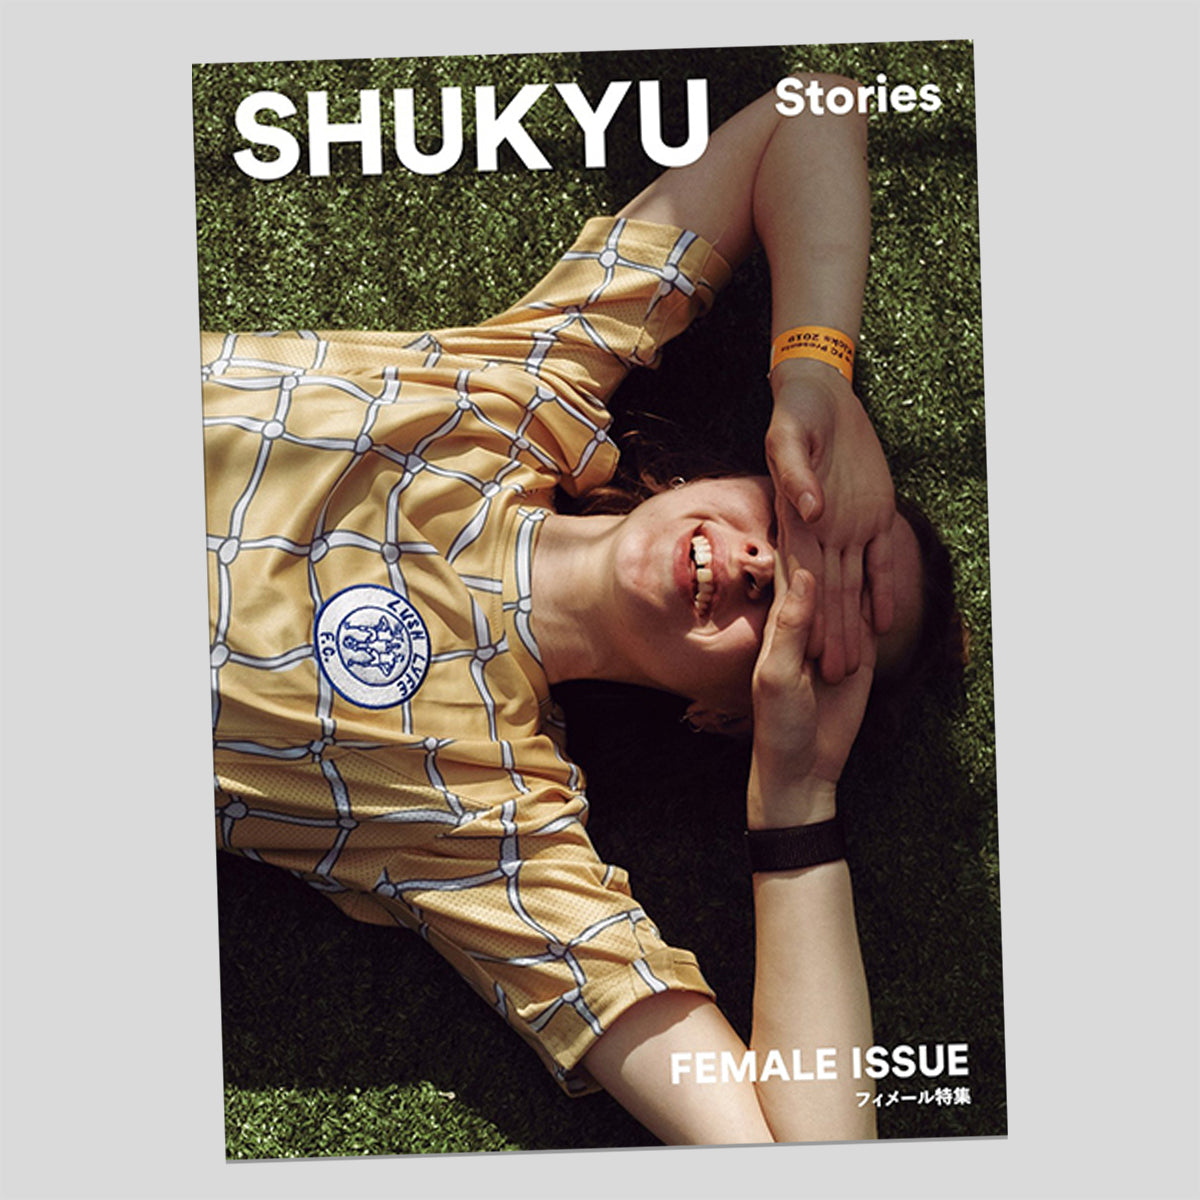 Shukyu Stories